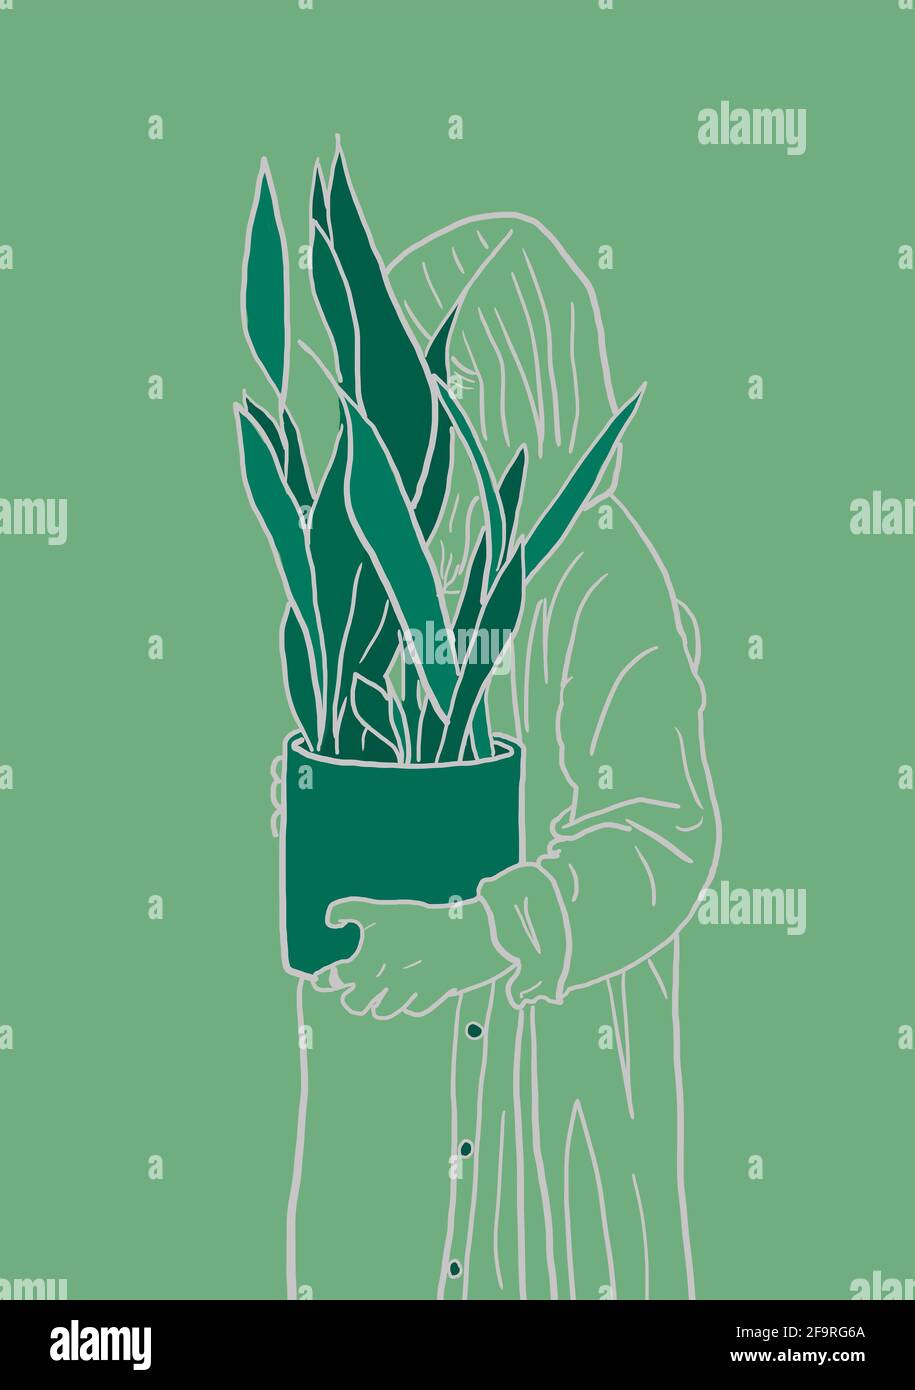 La fille tient dans ses mains un pot blanc avec une fleur de ficus. Plante décorative pour la maison. Illustration concept environnemental 2021. Banque D'Images